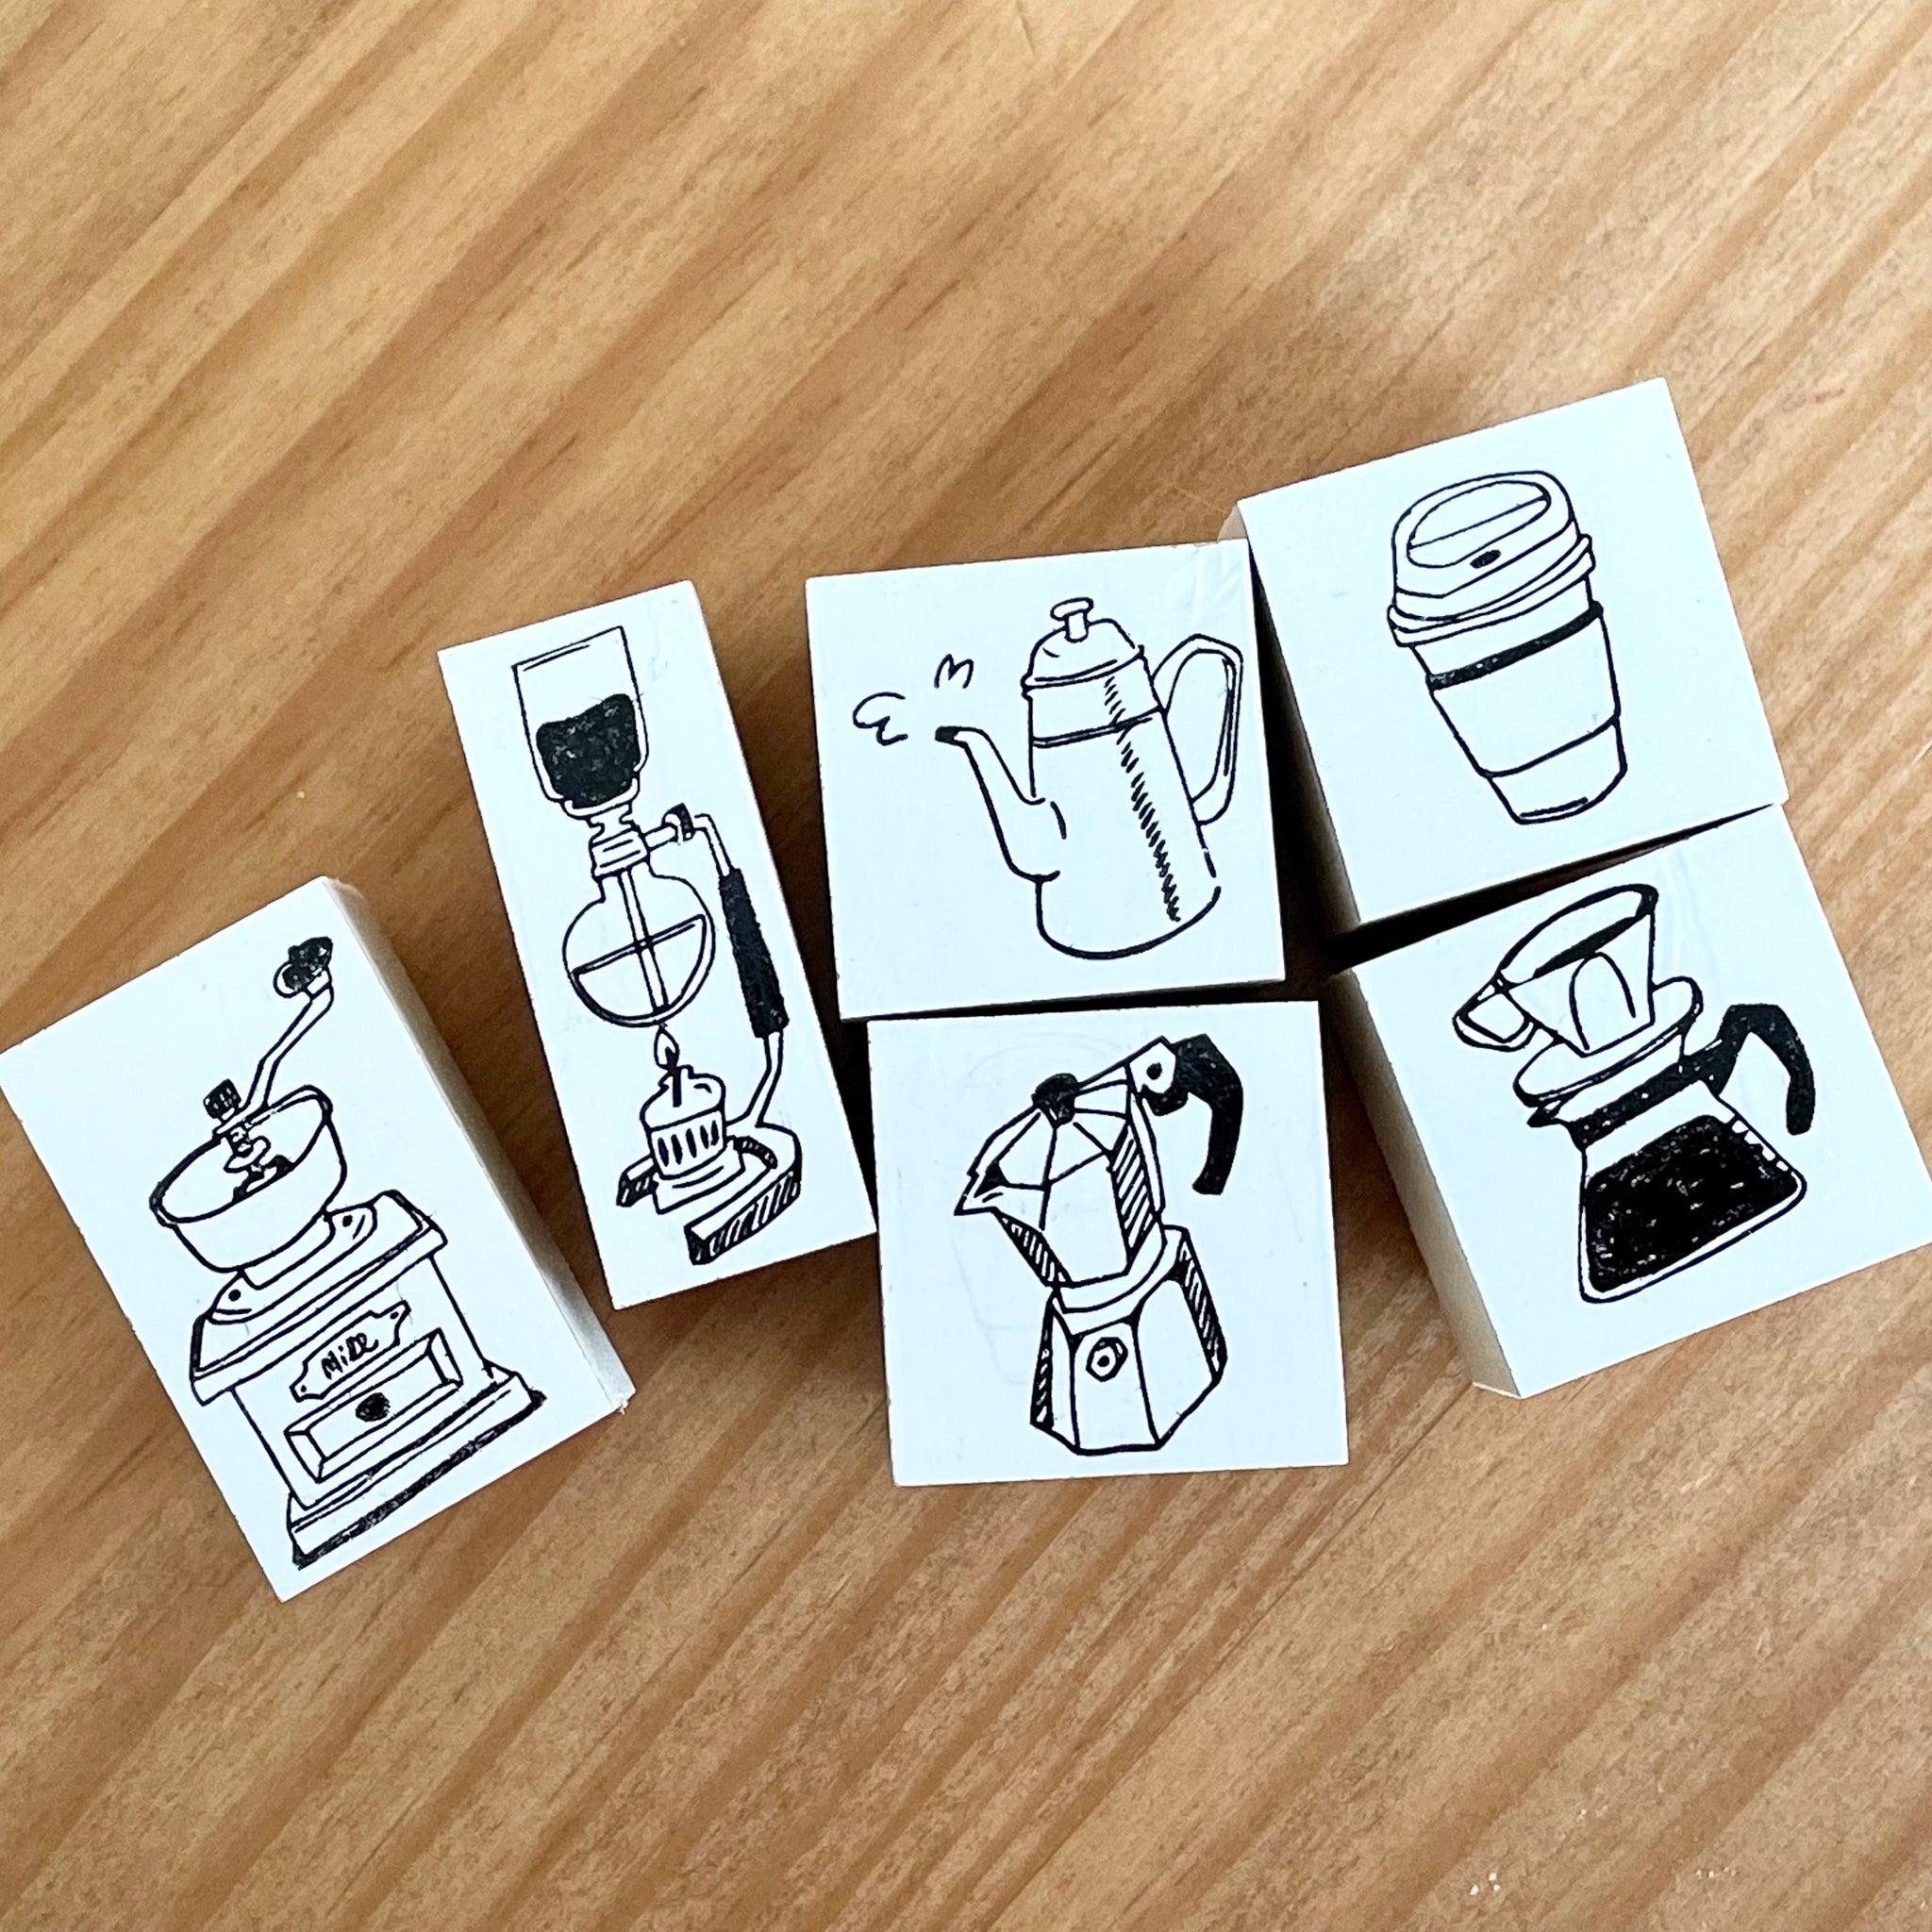 36 Sublo Coffee Hanko / Rubber Stamp